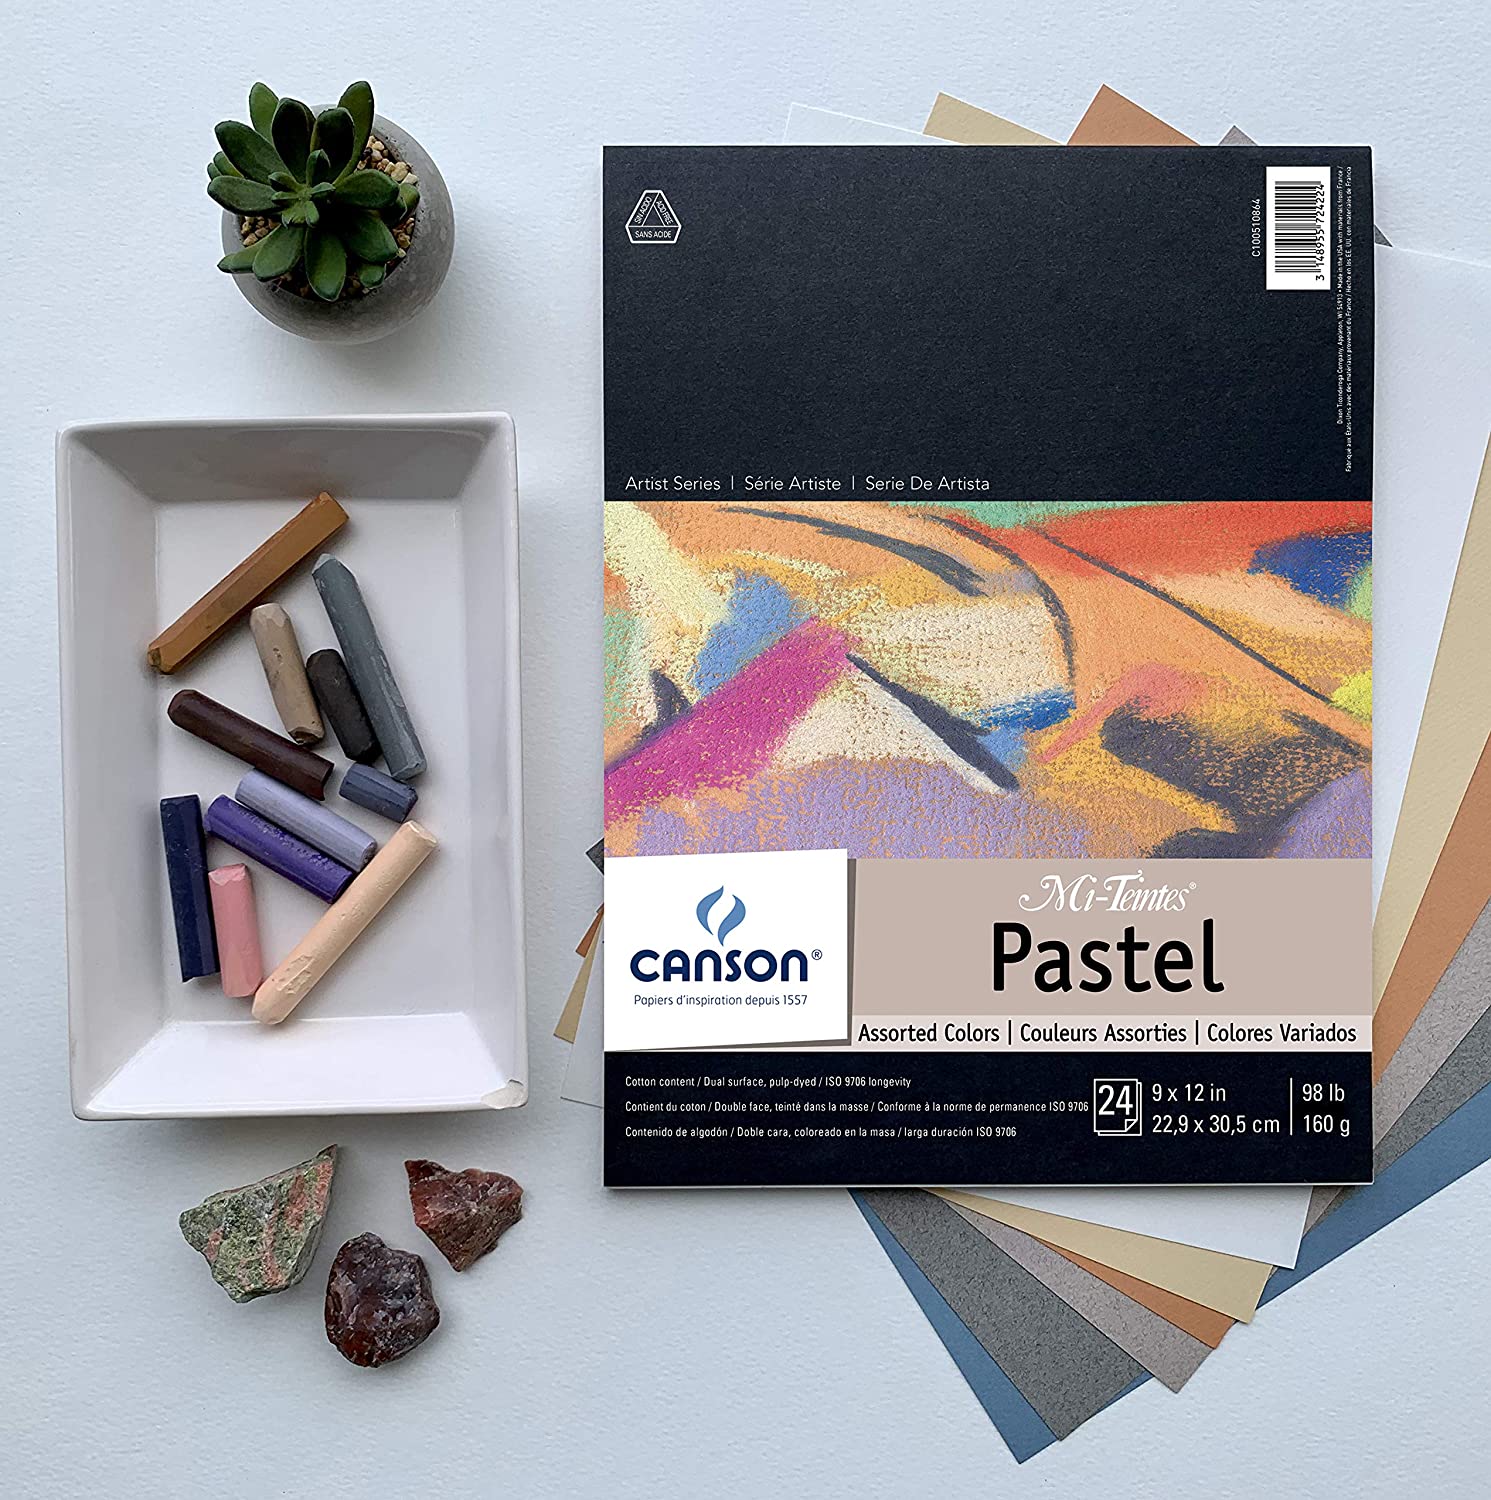 Canson Mi-Teintes Pastel Pads - Wyndham Art Supplies